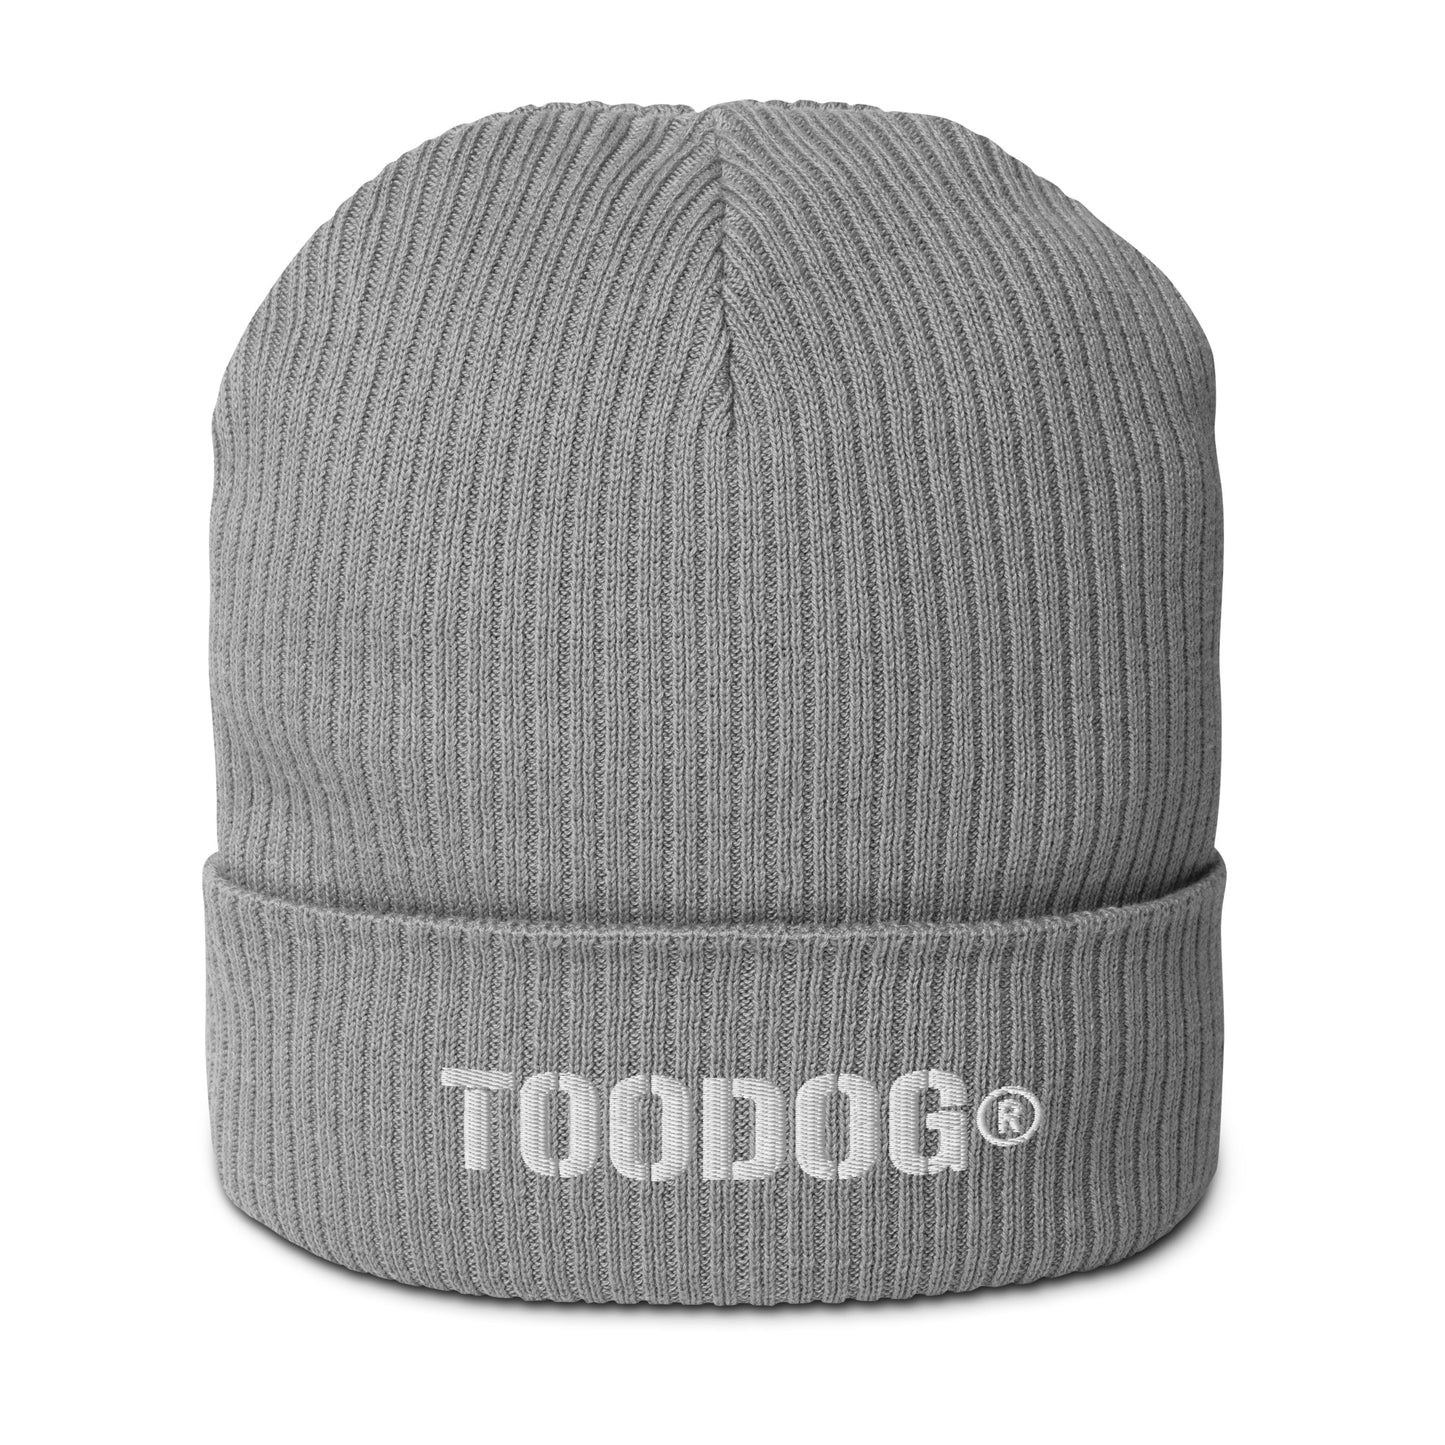 Toodog® Organic ribbed beanie